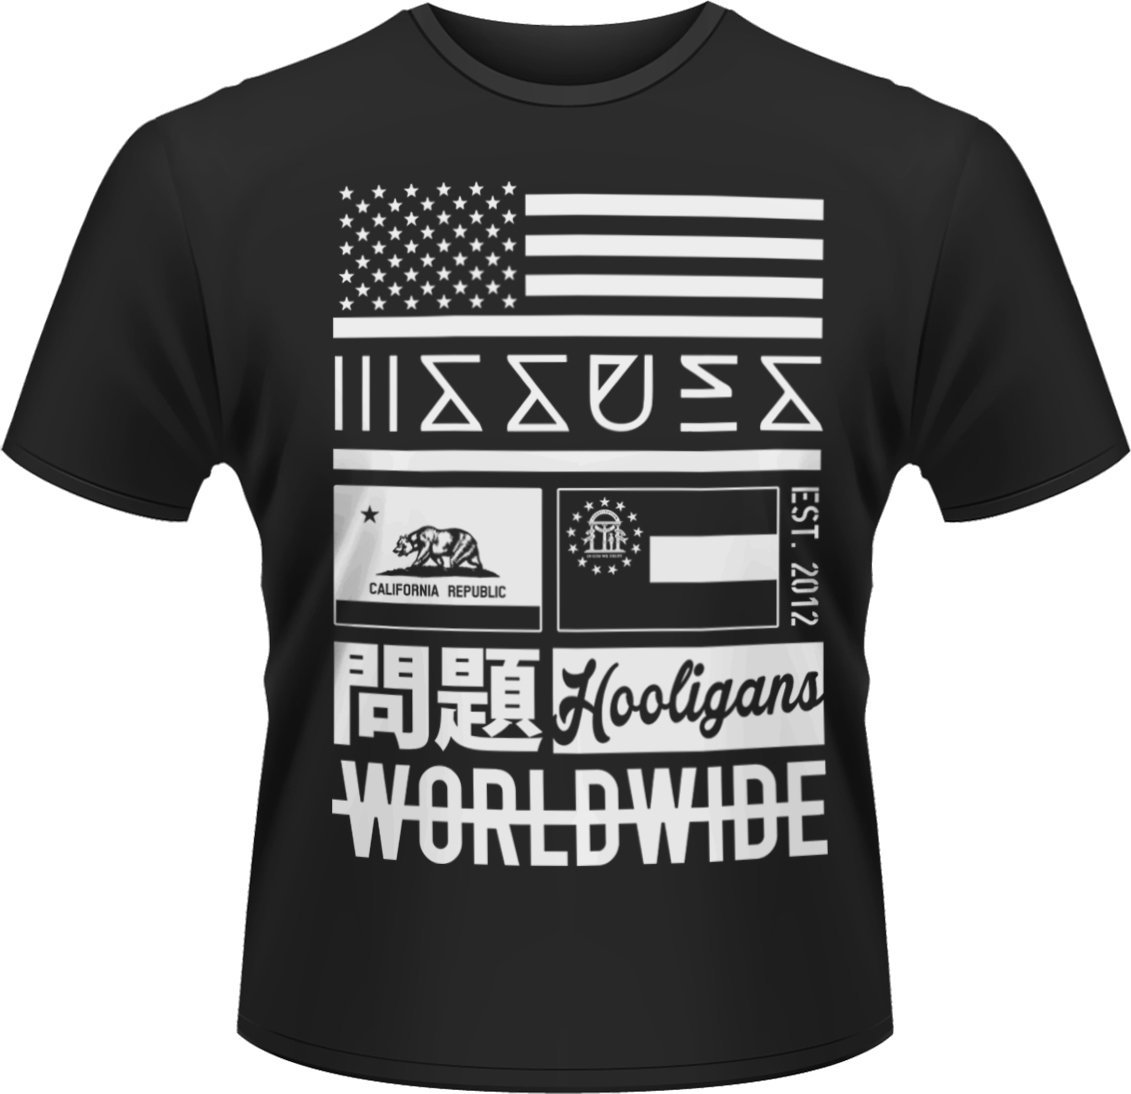 Koszulka Issues Koszulka Worldwide Czarny XL